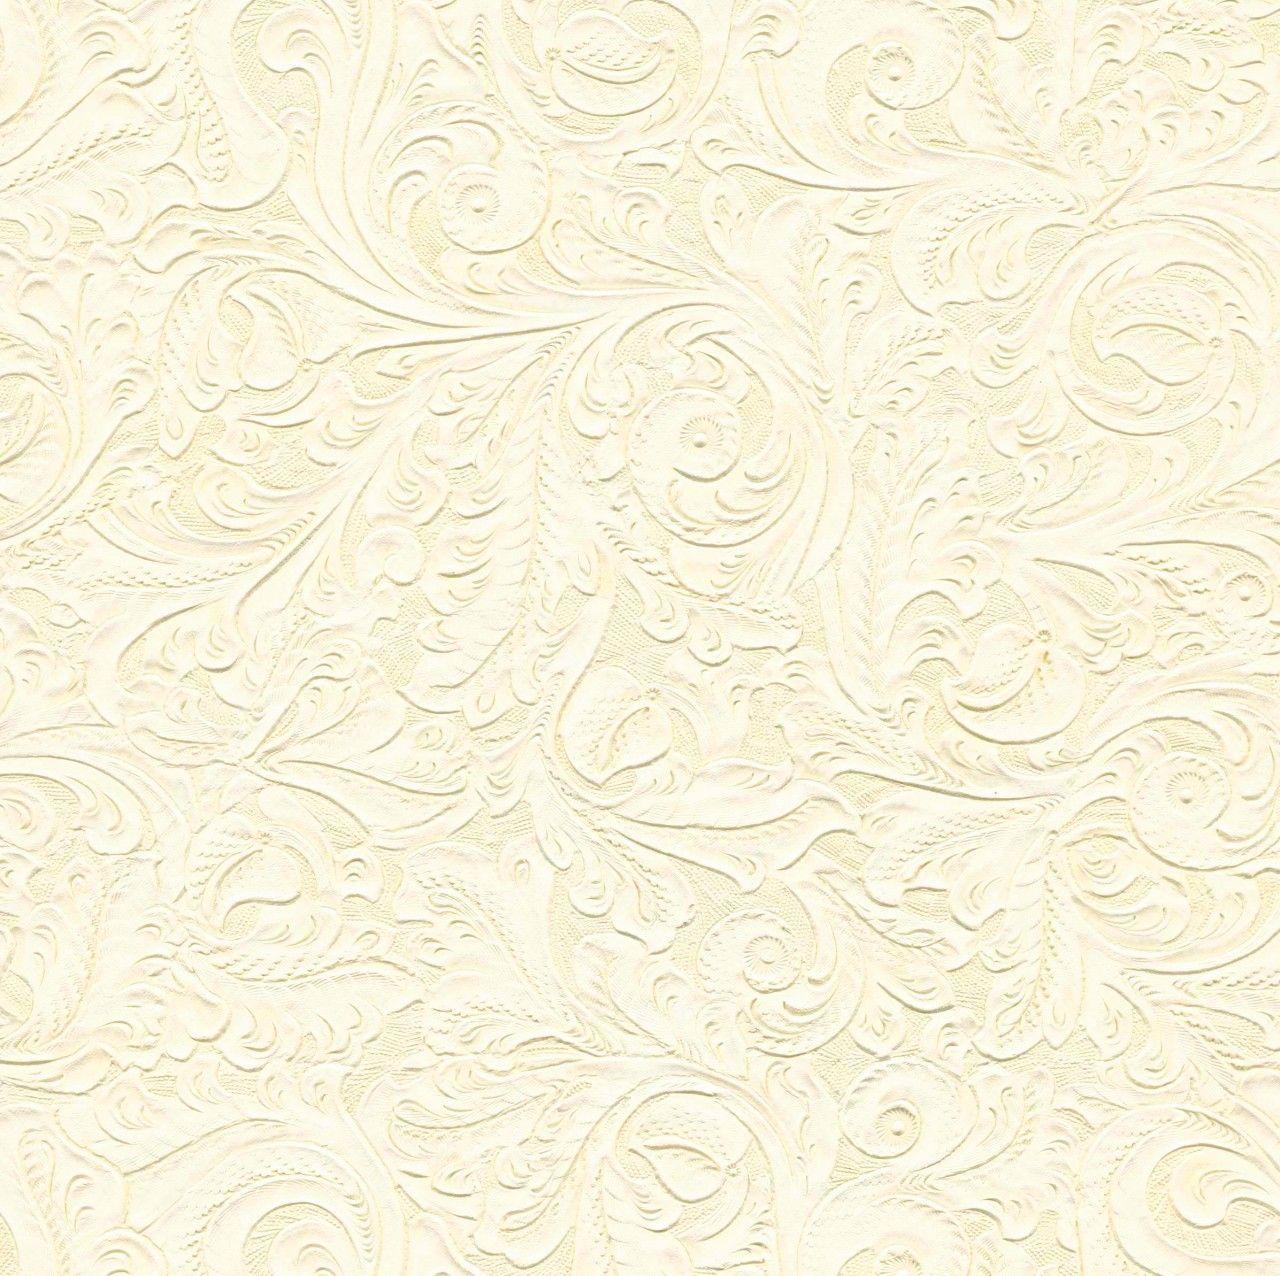 [77+] Cream Colored Wallpaper | WallpaperSafari.com